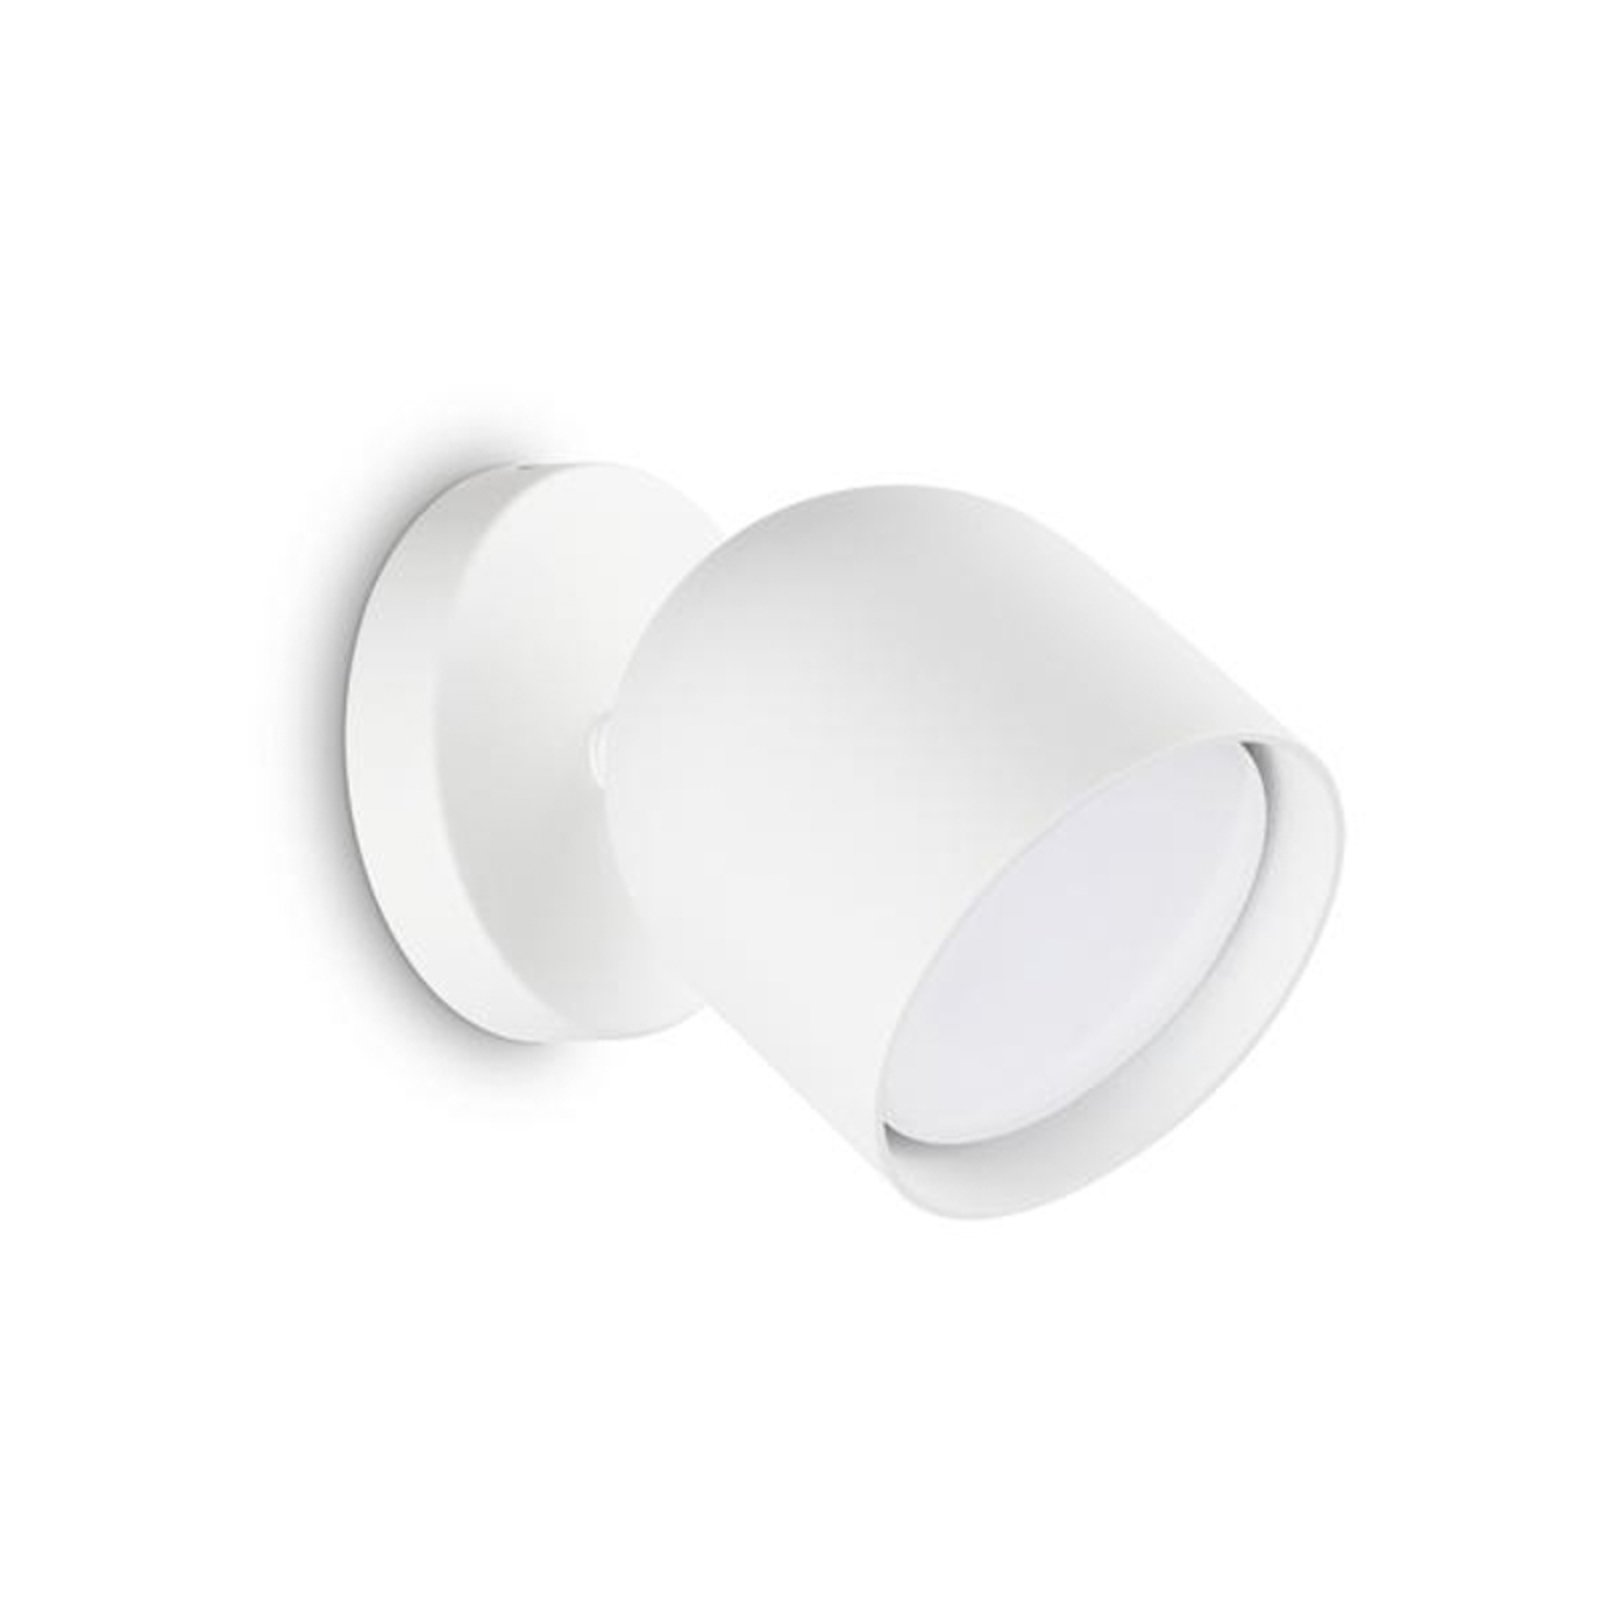 Ideal Lux vägglampa Dodo, vit, 1 lampa, metall Ø 8,5 cm